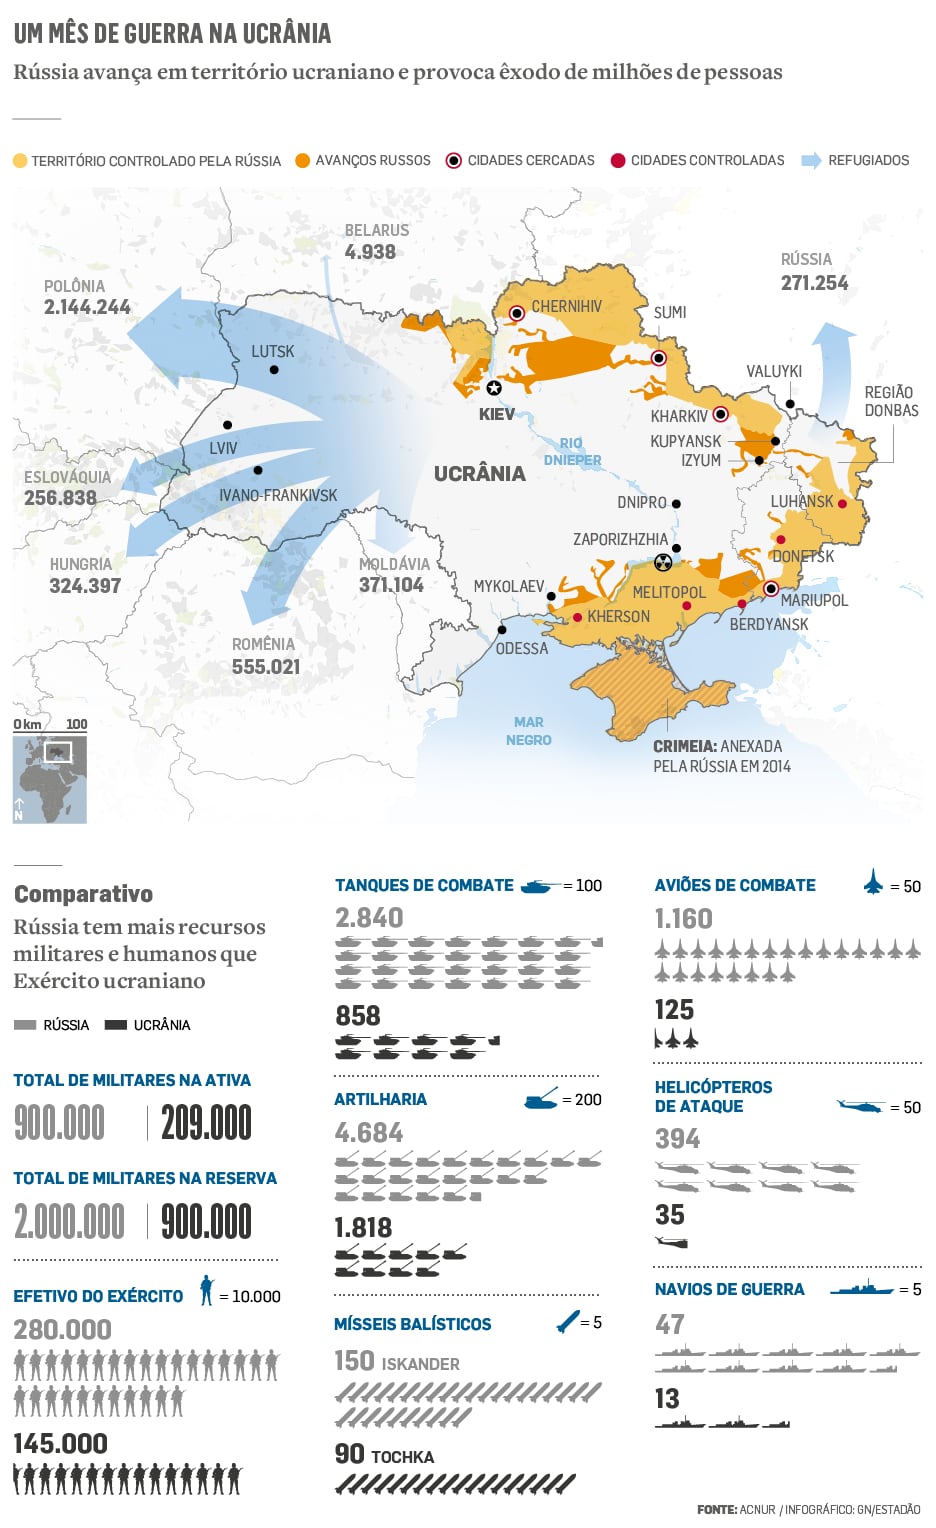 Um mês de guerra na Ucrânia
Rússia avança em território ucraniano e provoca êxodo de milhões de pessoas